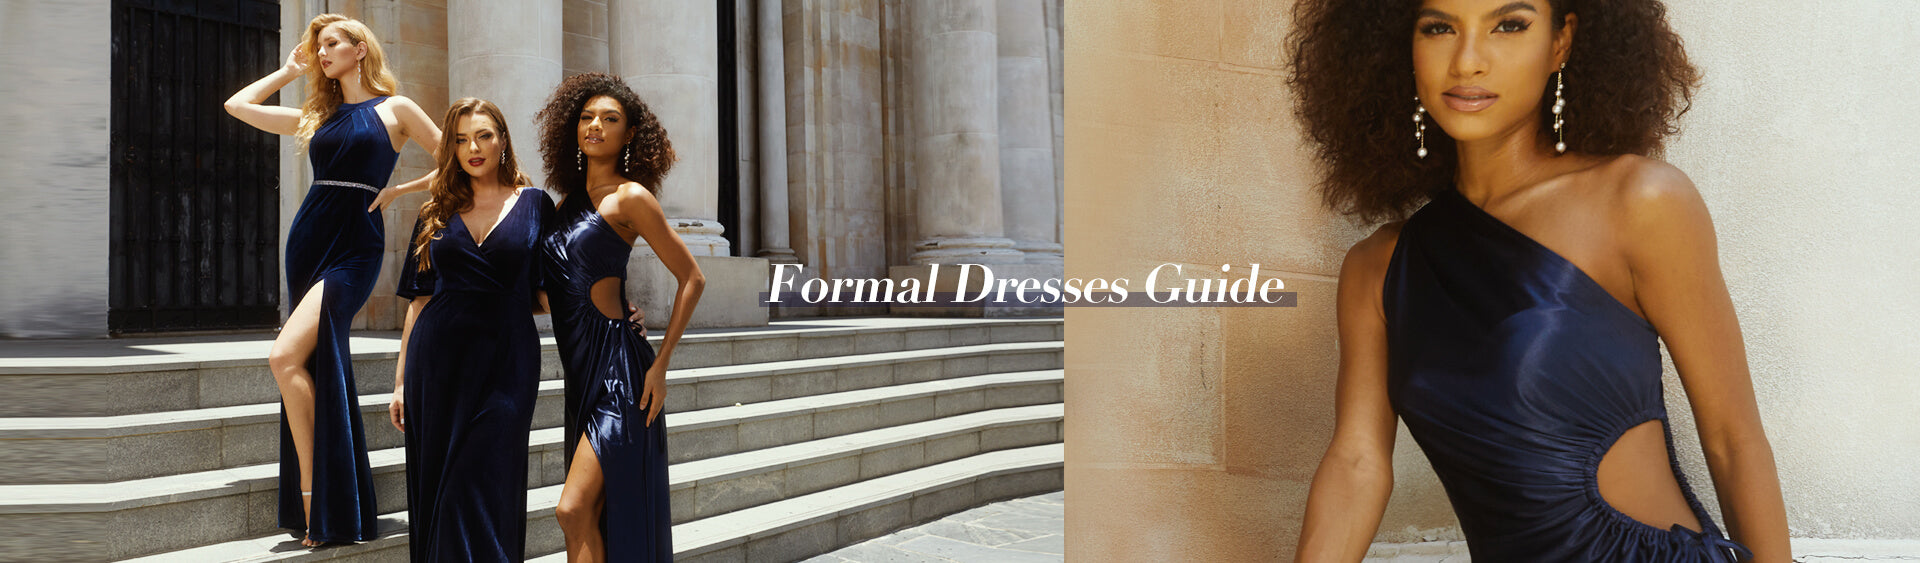 formal dresses for women